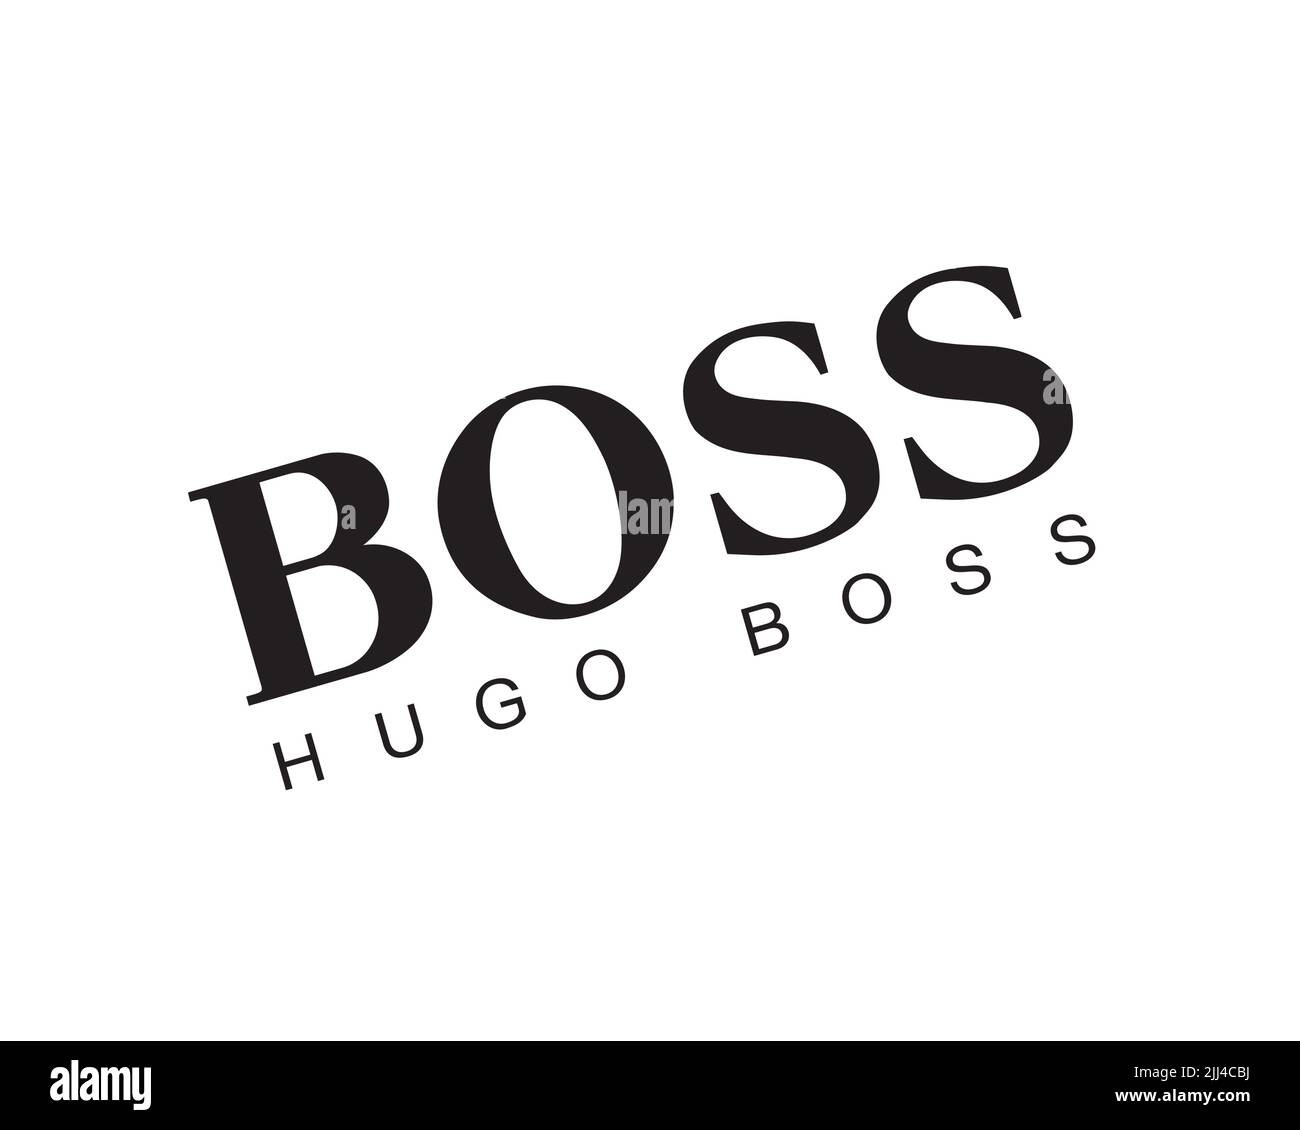 Hugo Boss, Rotated Logo, White Background Stock Photo - Alamy